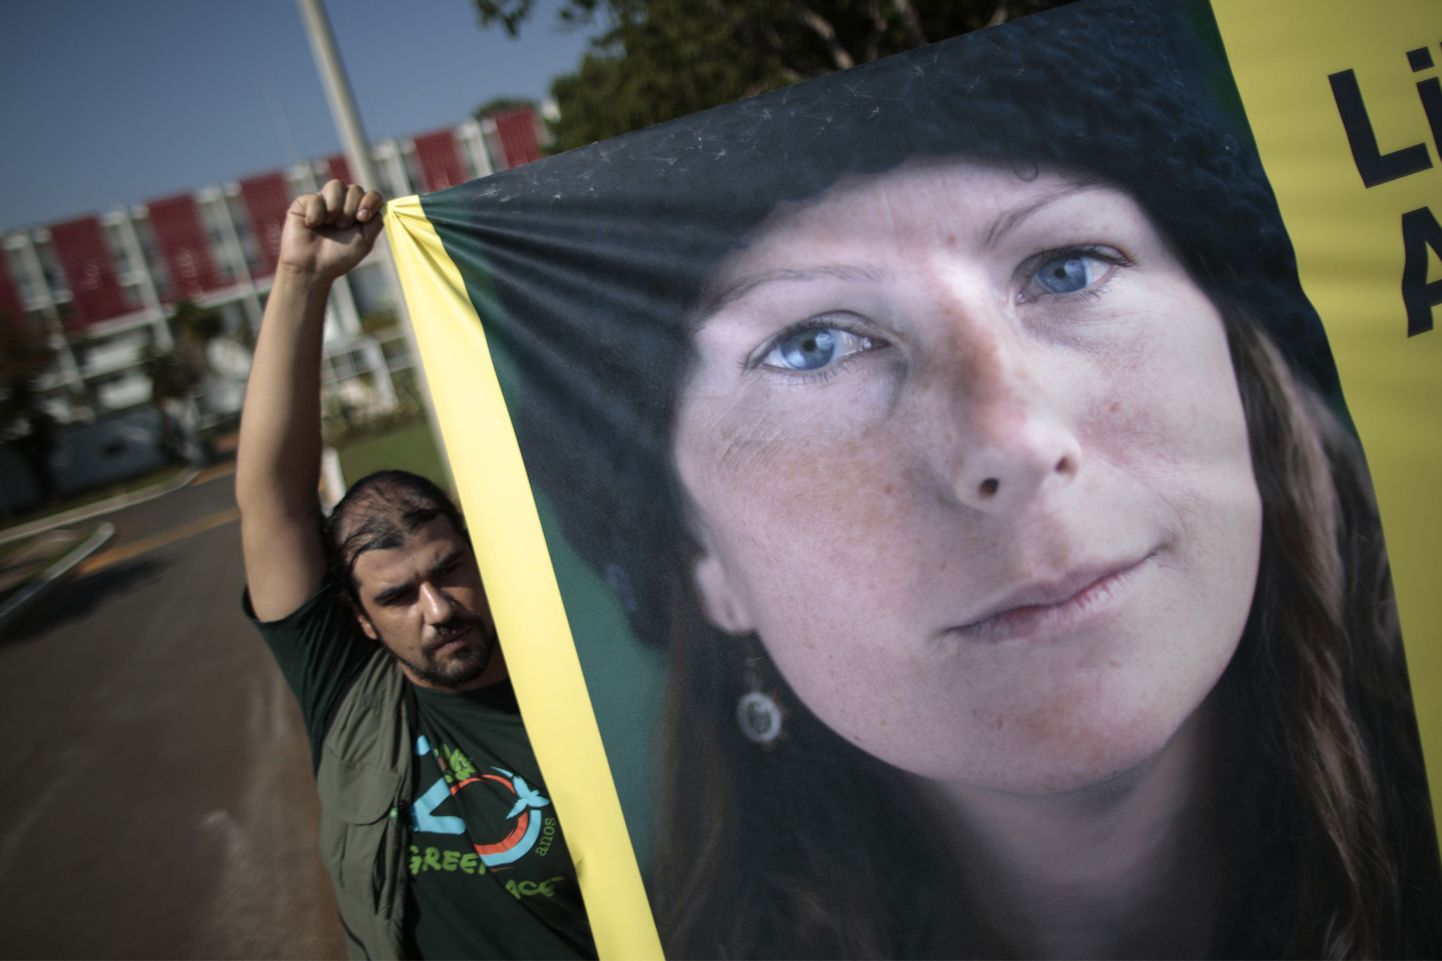 Greenpeace'i aktivist hoidmas Ana Paul Macieli plakatit Vene saatkonna ees Brasiilias.